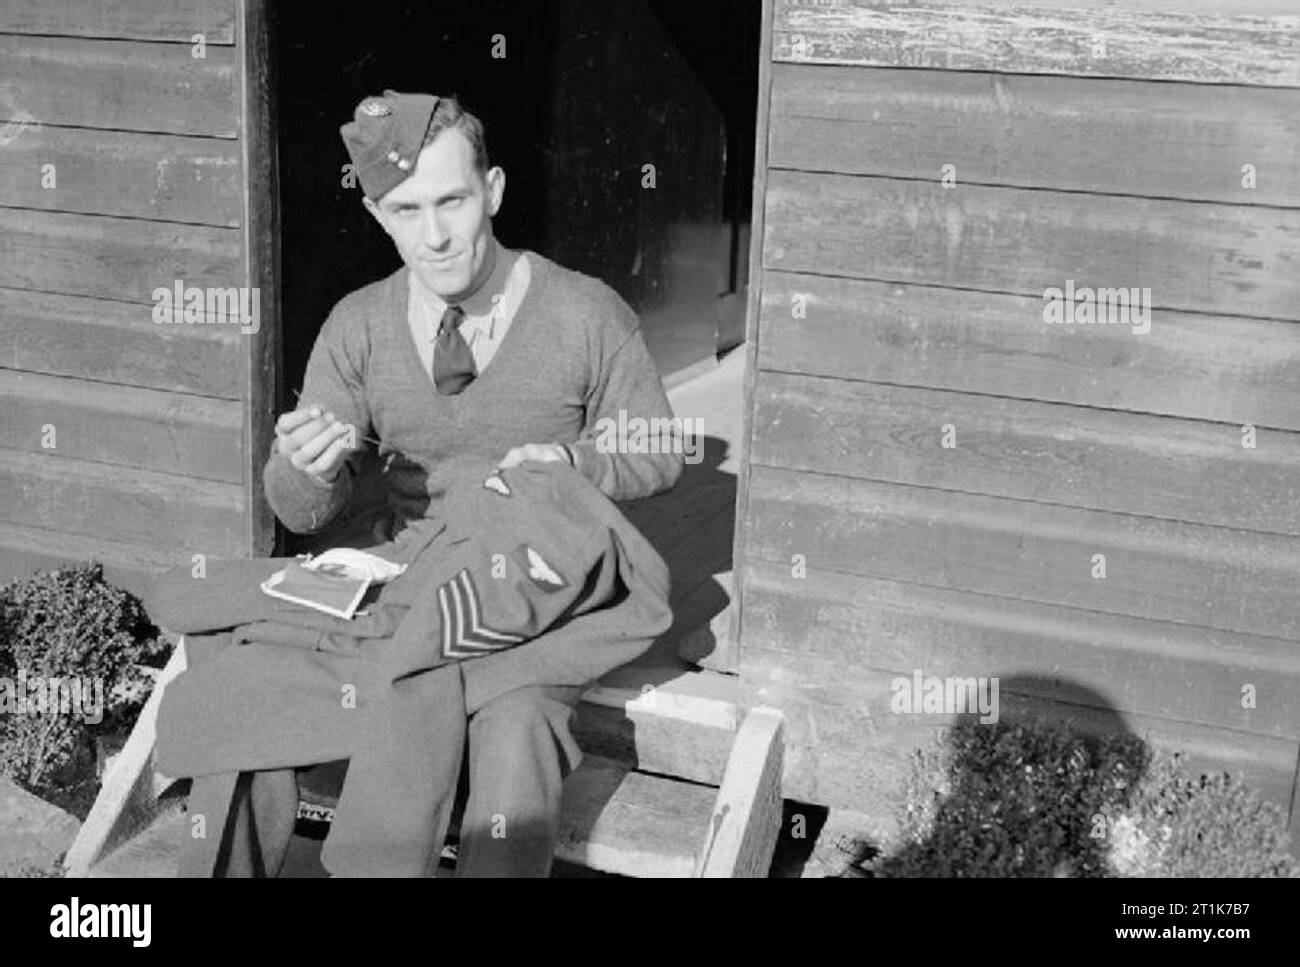 Royal Air Force 1939-1945 - Bomber Command Sergeant R Kürzere näht seine neu vergeben aircrew Brevet und Streifen auf seine Tunika, nachdem sie als Flugingenieur an Nr. 4 Schule der technischen Ausbildung bei St Athan in South Wales, Februar 1944. Stockfoto